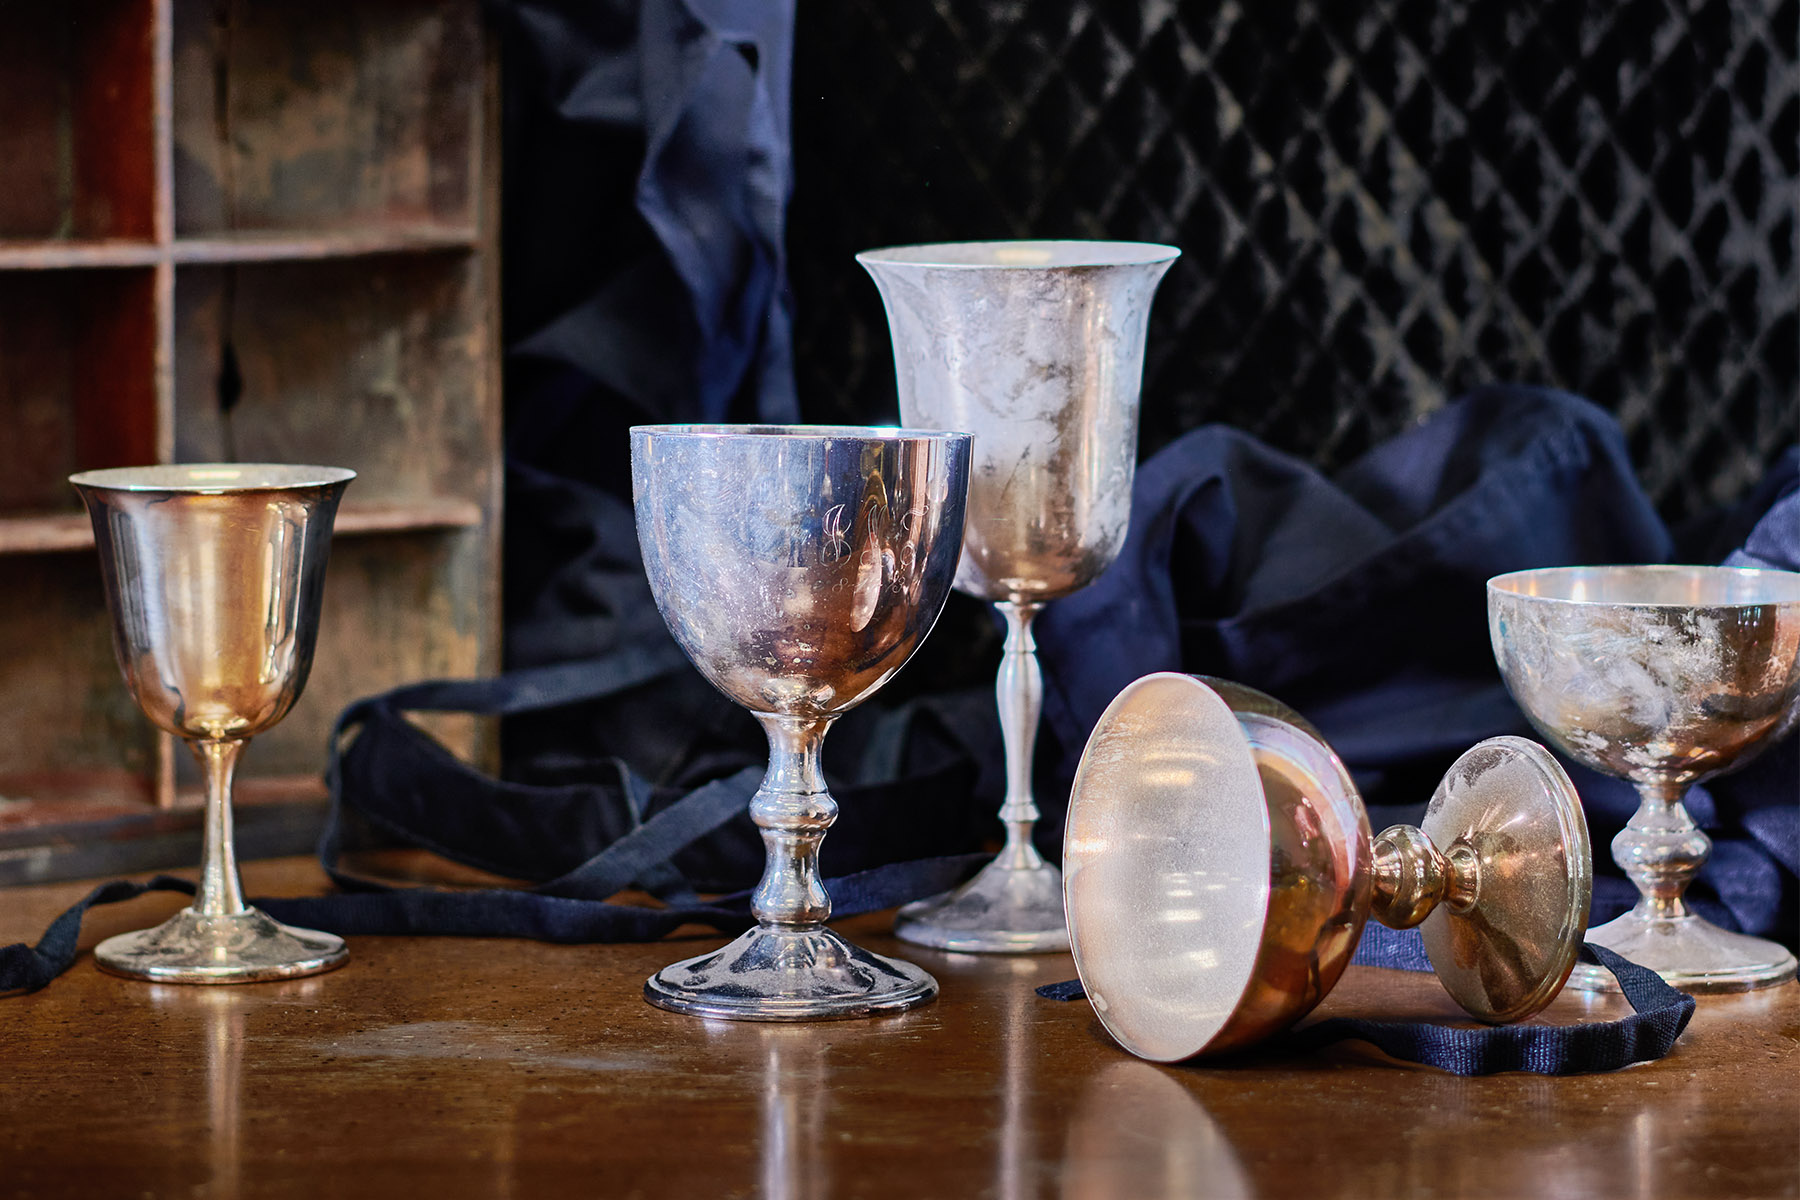 Noles David Antique Restoration tarnished silver goblets